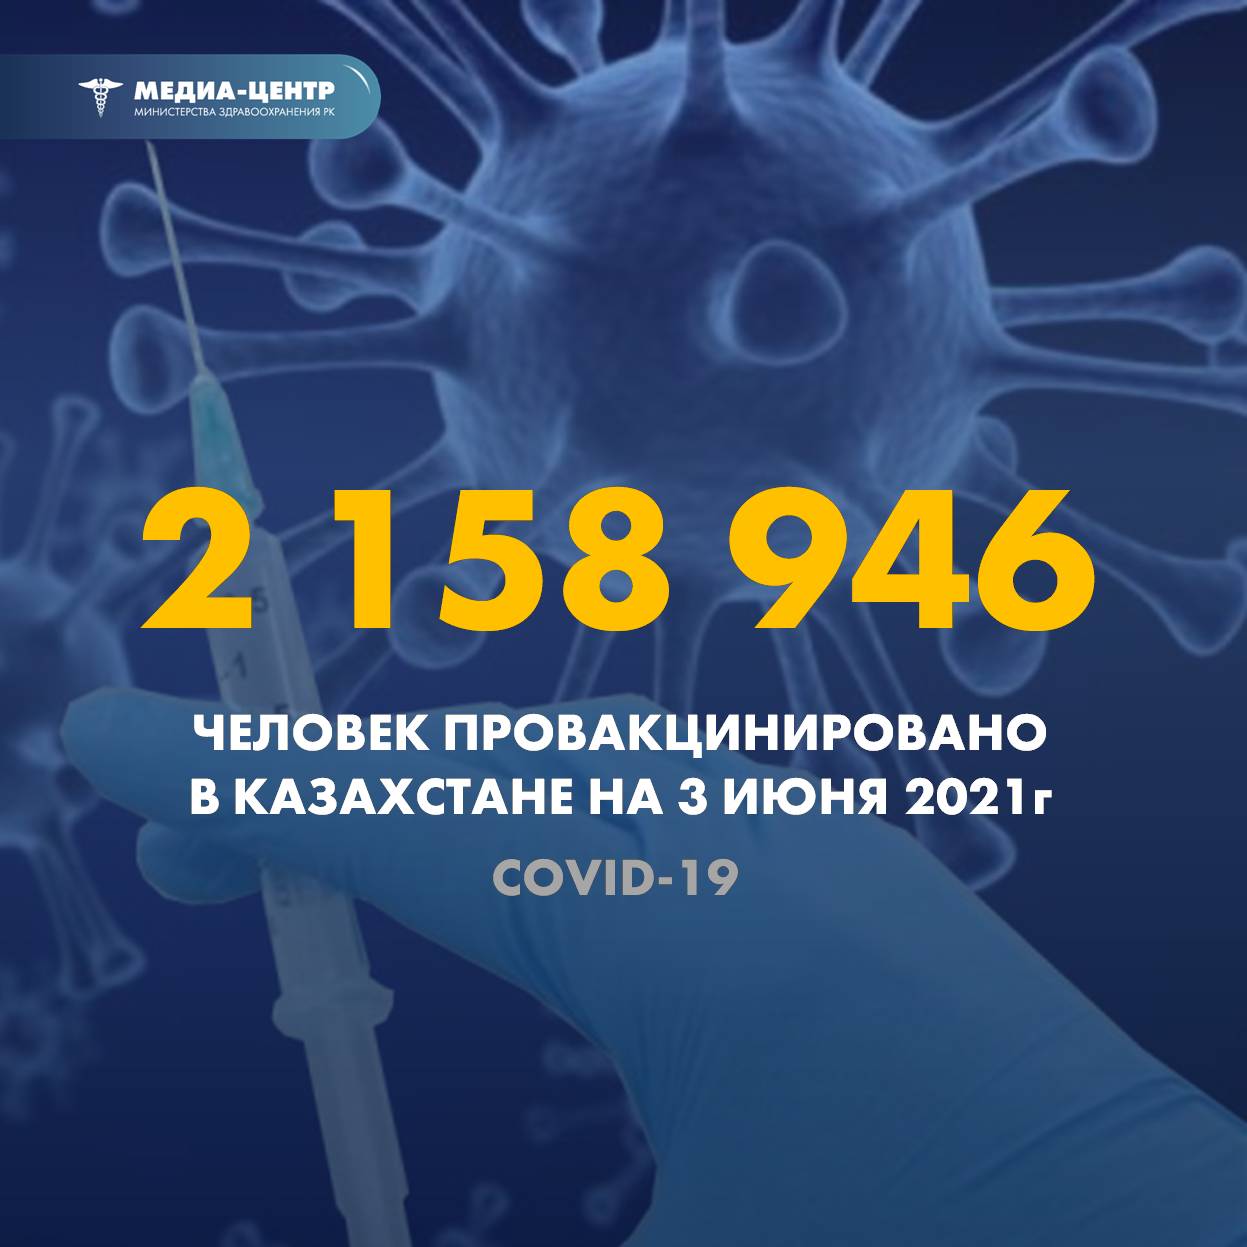 2 158 946 человек провакцинировано в Казахстане на 3 июня 2021 г